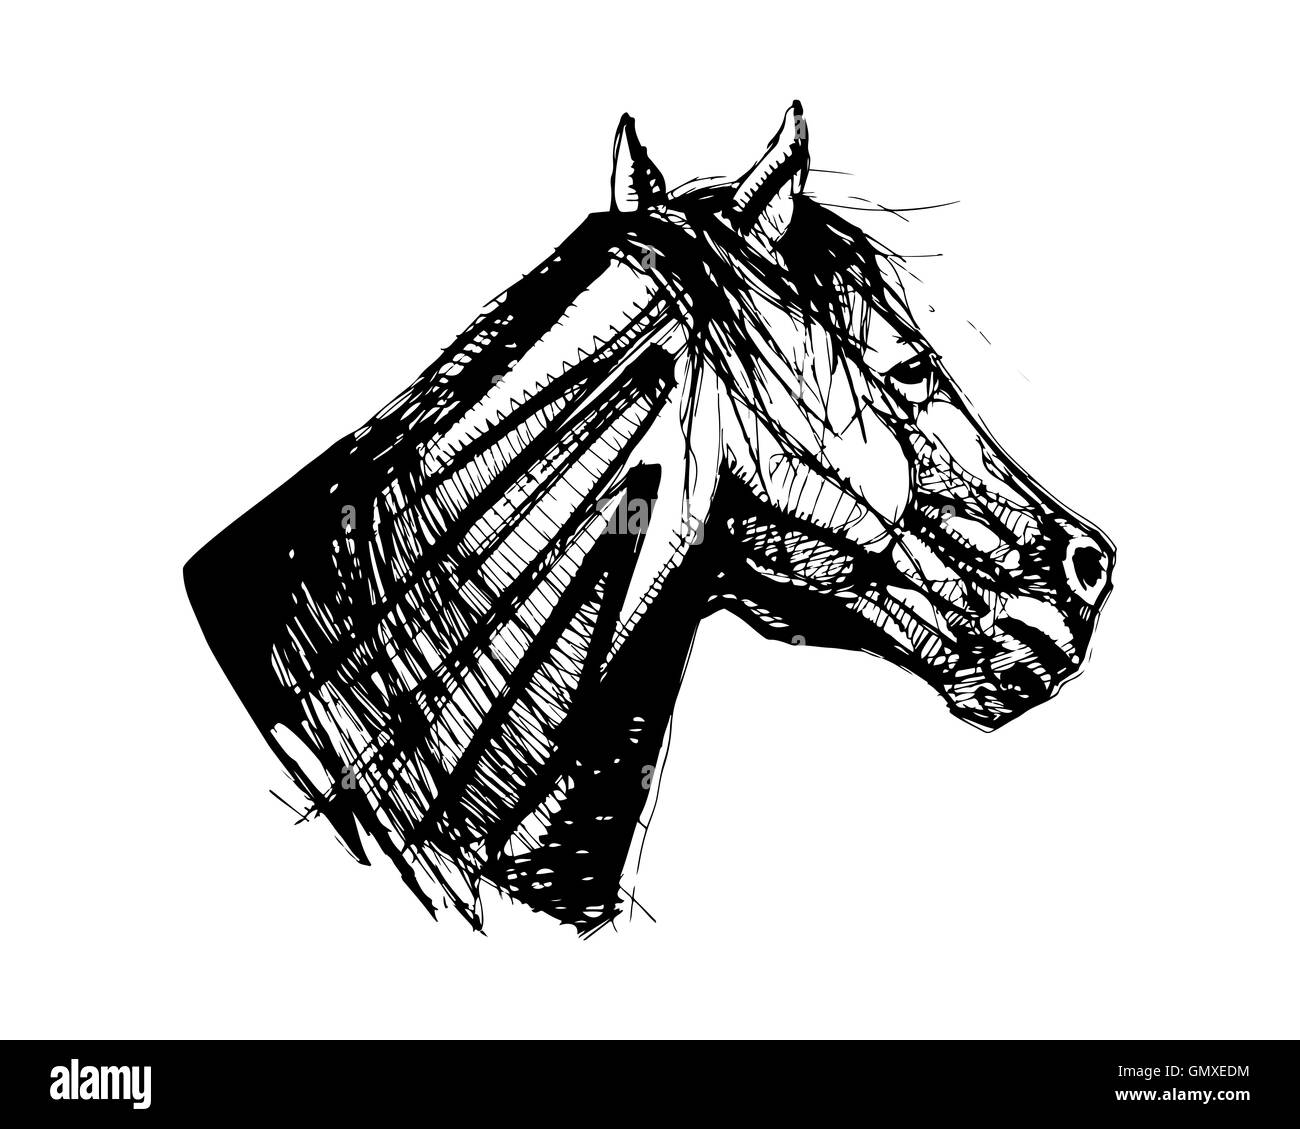 Ilustración dibujada a mano o un dibujo de una cabeza de caballo Foto de stock